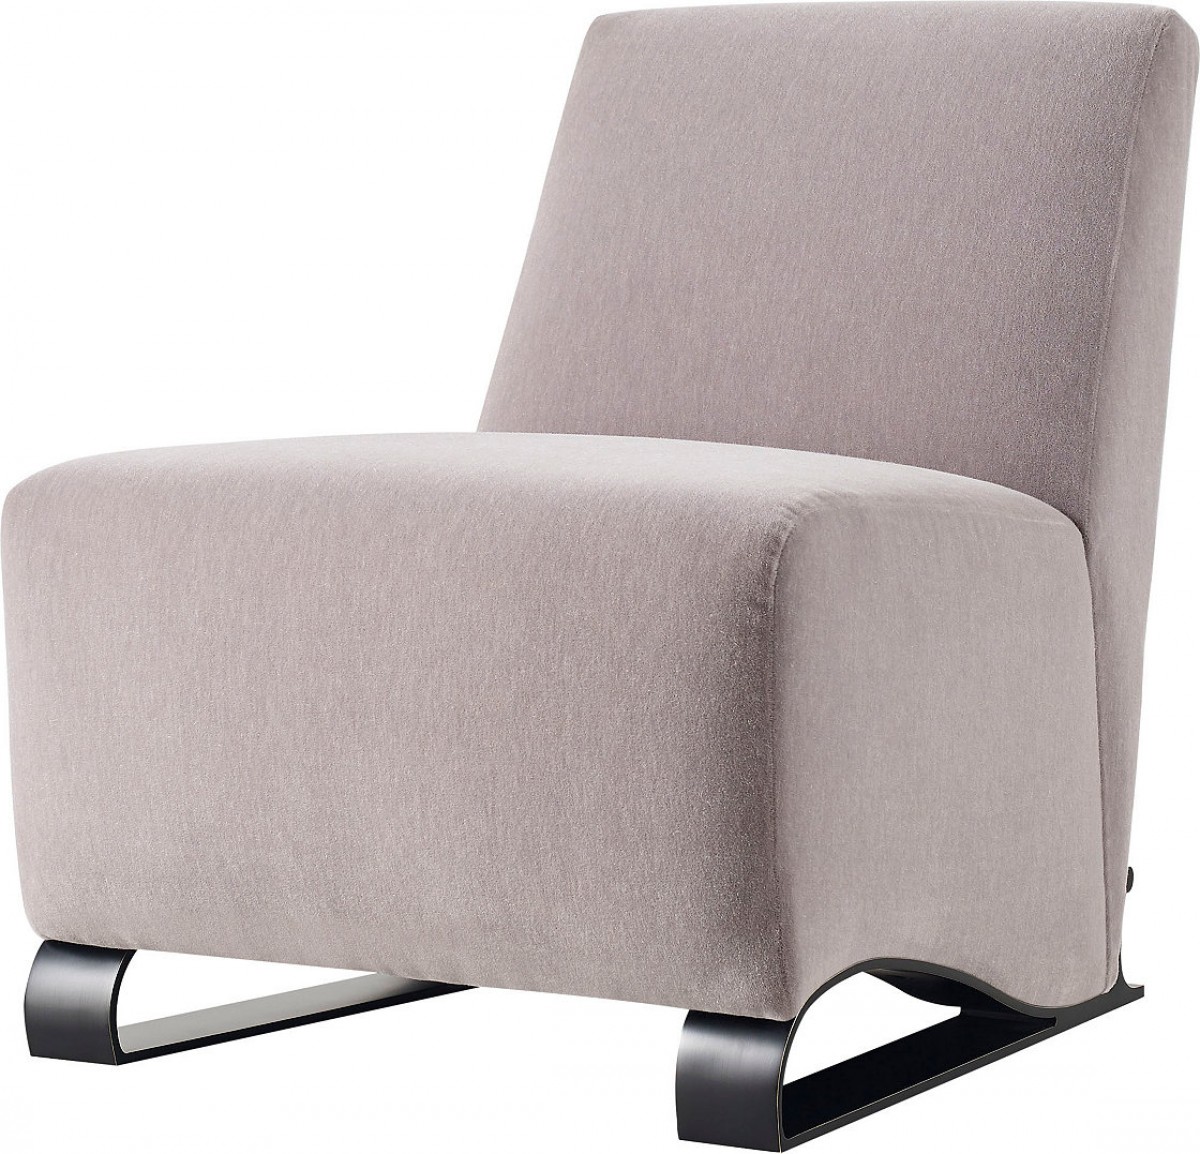 Sleigh Lounge Chair